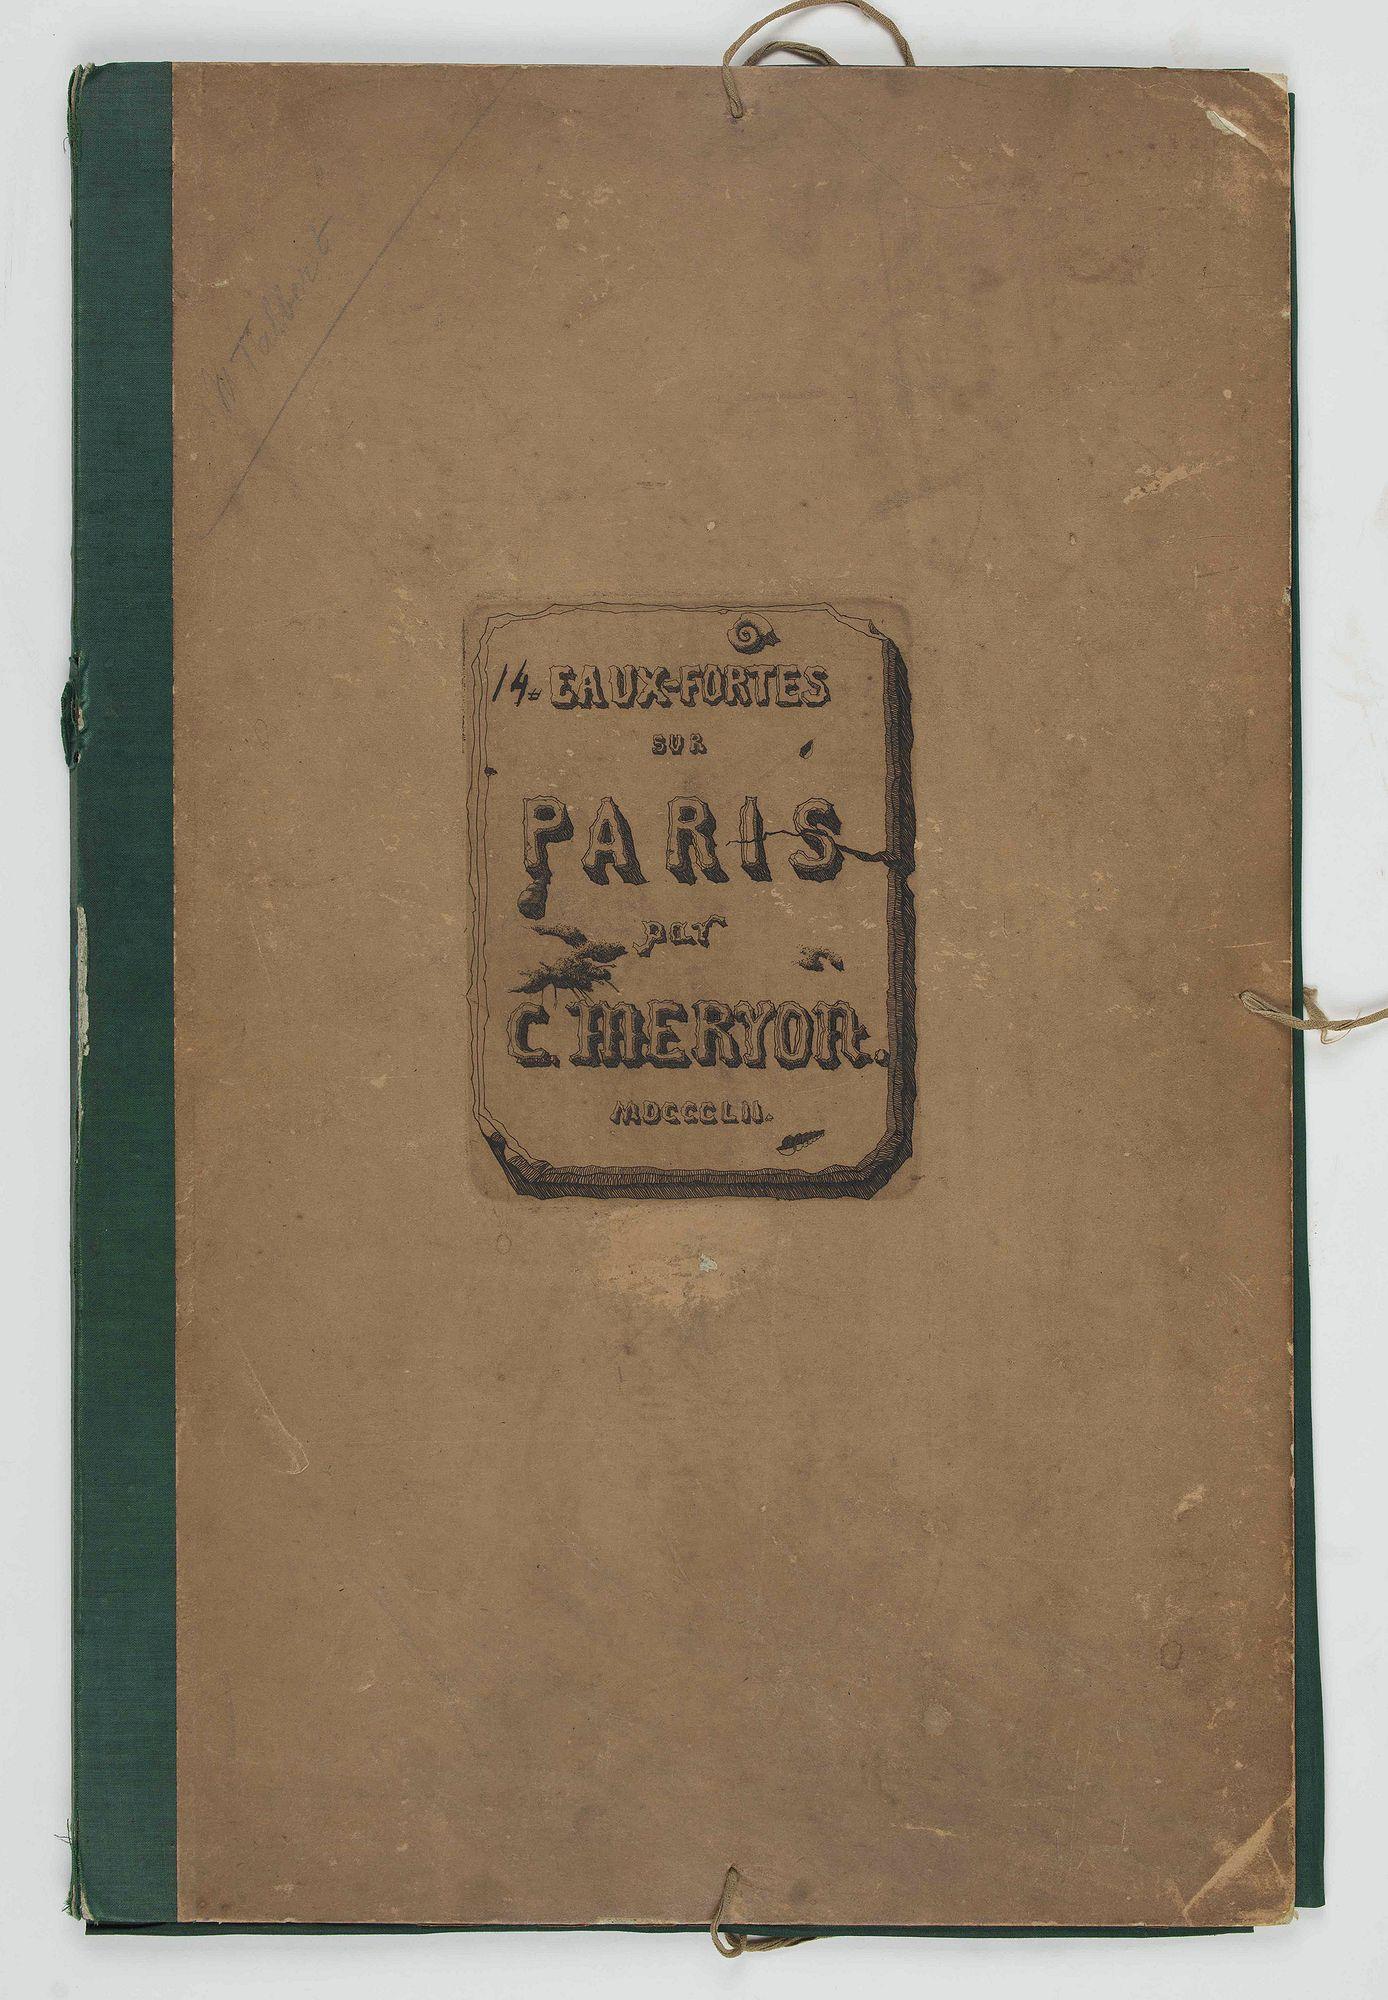 Charles Meryon Print - Eaux-fortes sur Paris, vers 1850-1854